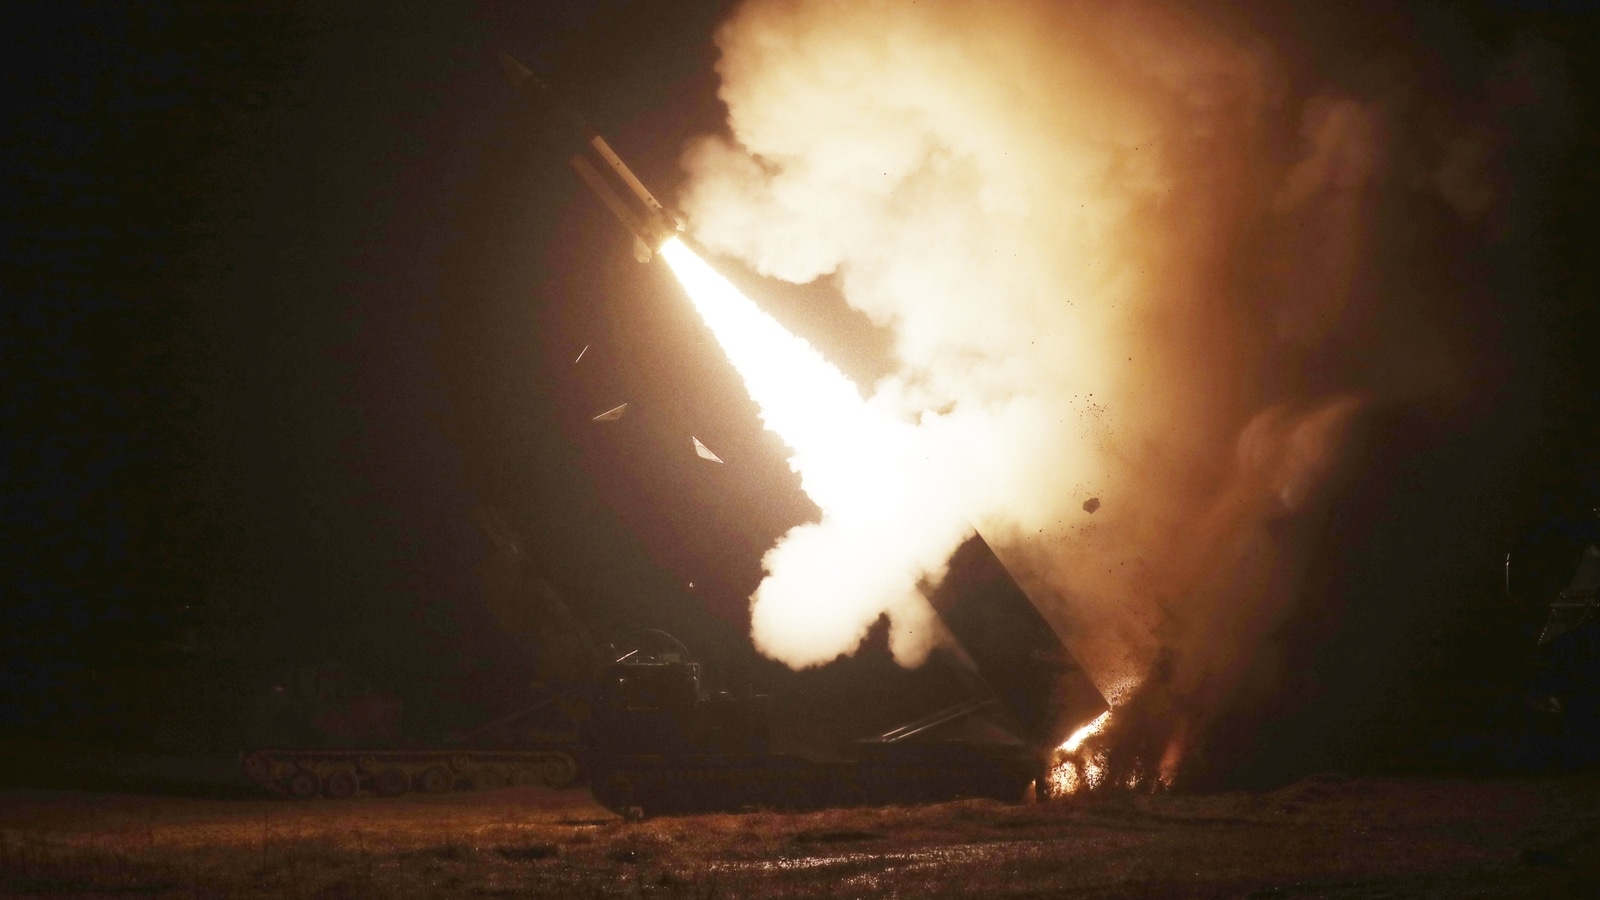 उत्तर कोरिया के परीक्षण के जवाब में अमेरिका और दक्षिण कोरिया ने समुद्र में दागी 4 मिसाइलें